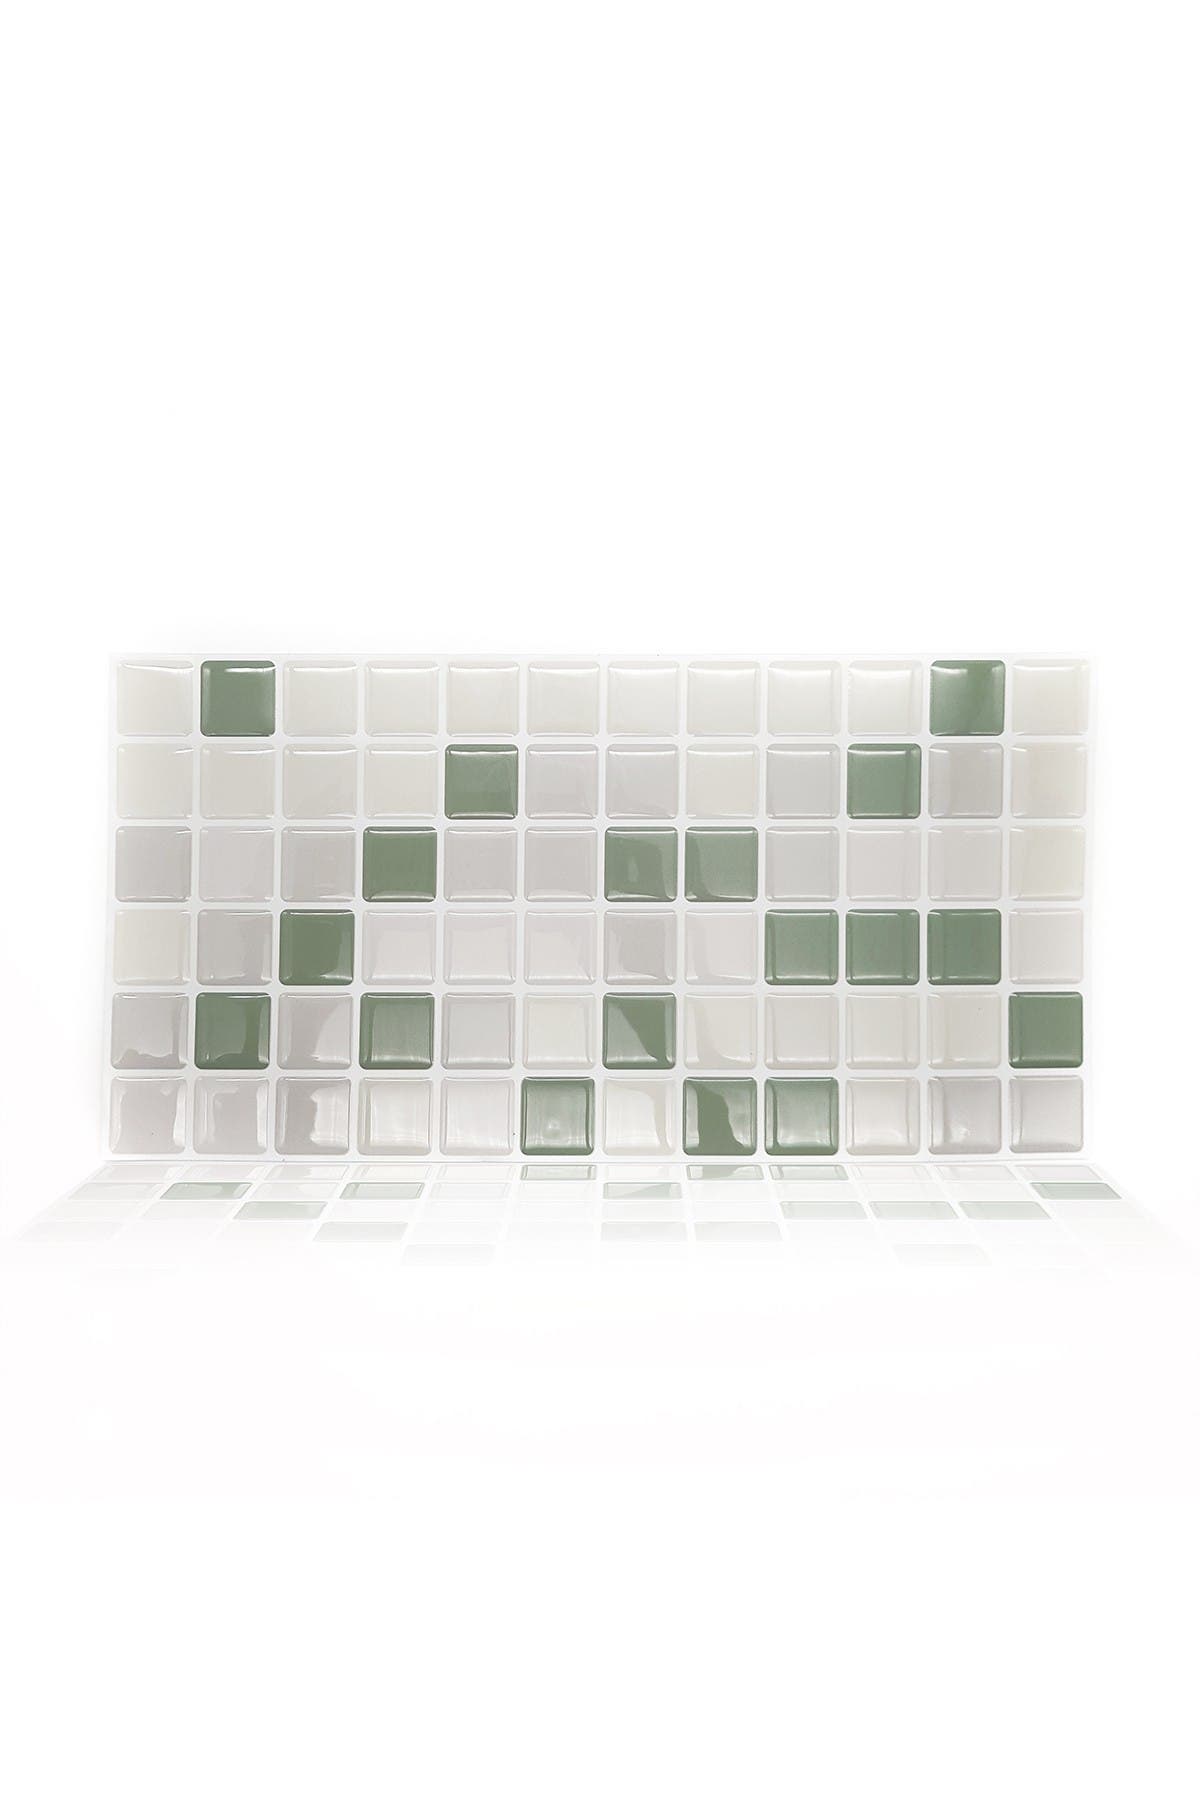 Fliesensticker Fliesenfolie Bad & Küche data-mtsrclang=en-US href=# onclick=return false; 							show original title Details about   Tile Sticker-Green Tile-Tile Sticker Tile Sheet-Bathroom & Kitchen- 							er Green Tile